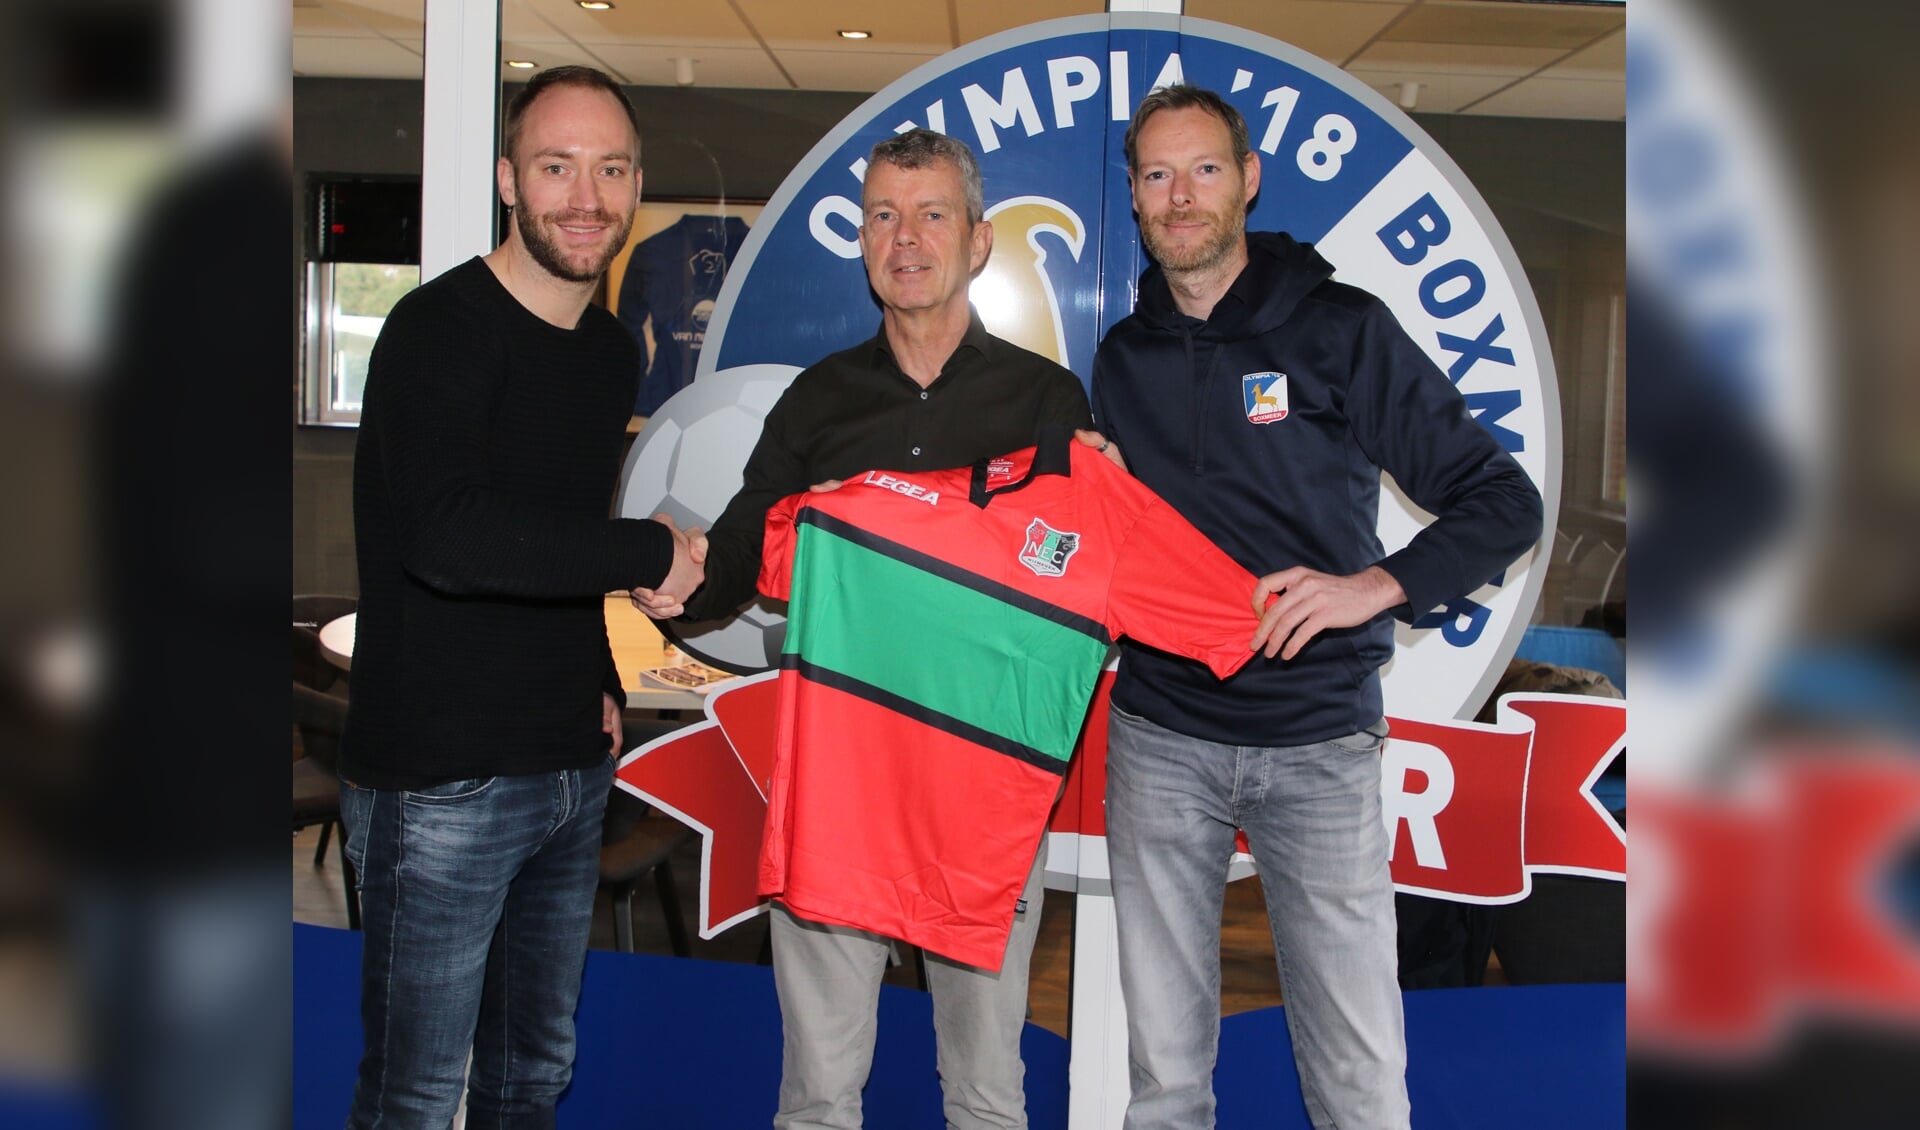 Olympia'18 is de nieuwe partnerclub van NEC Nijmegen. 